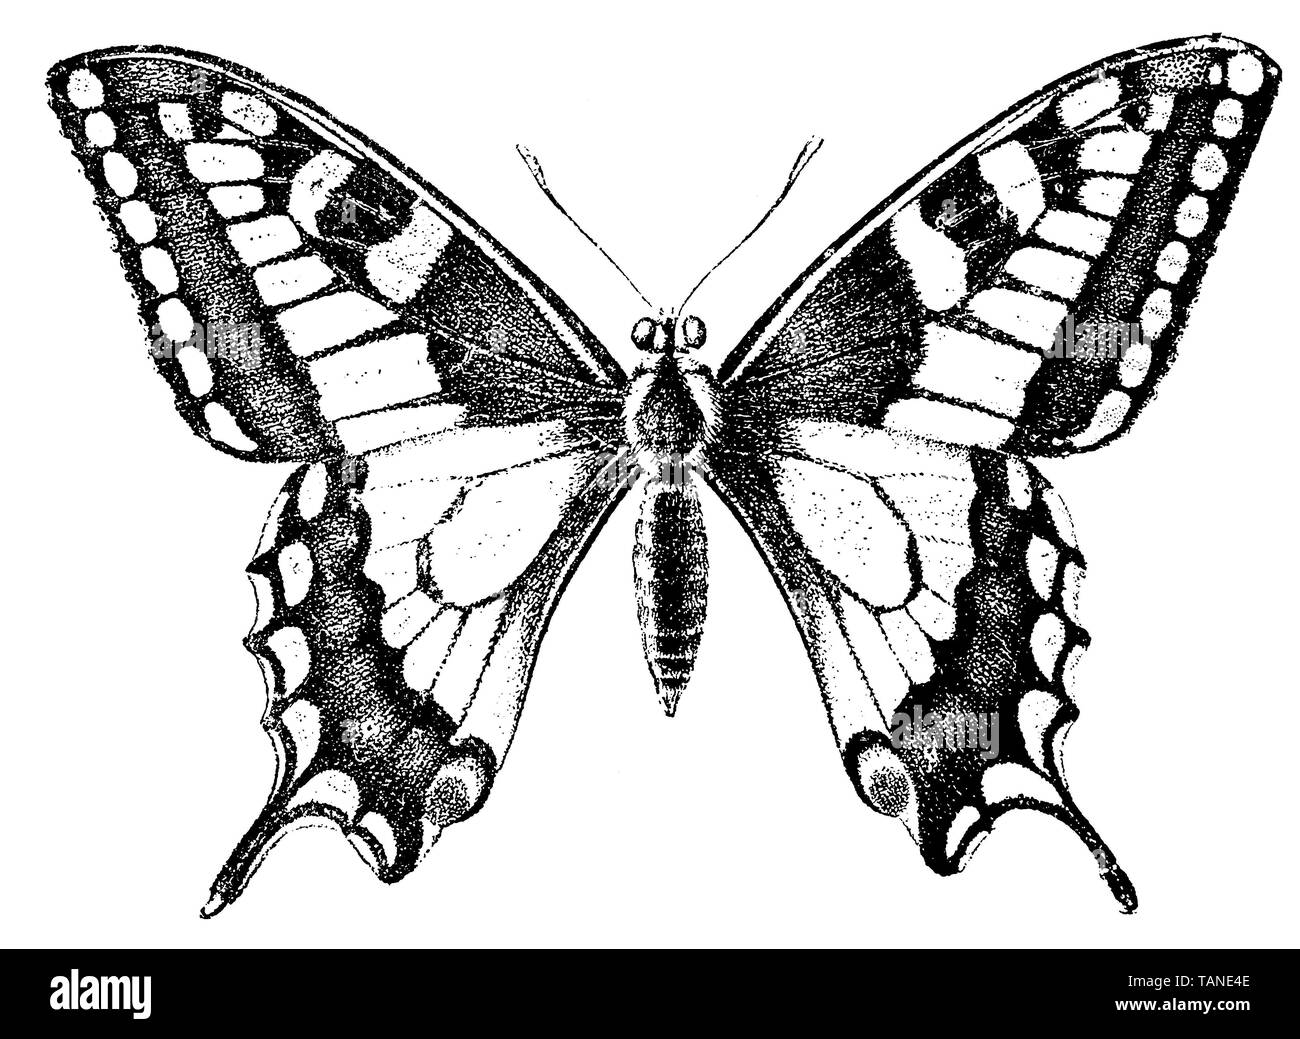 Ancien Monde, swallowtail Papilio machaon, (encyclopédie, 1892) Banque D'Images